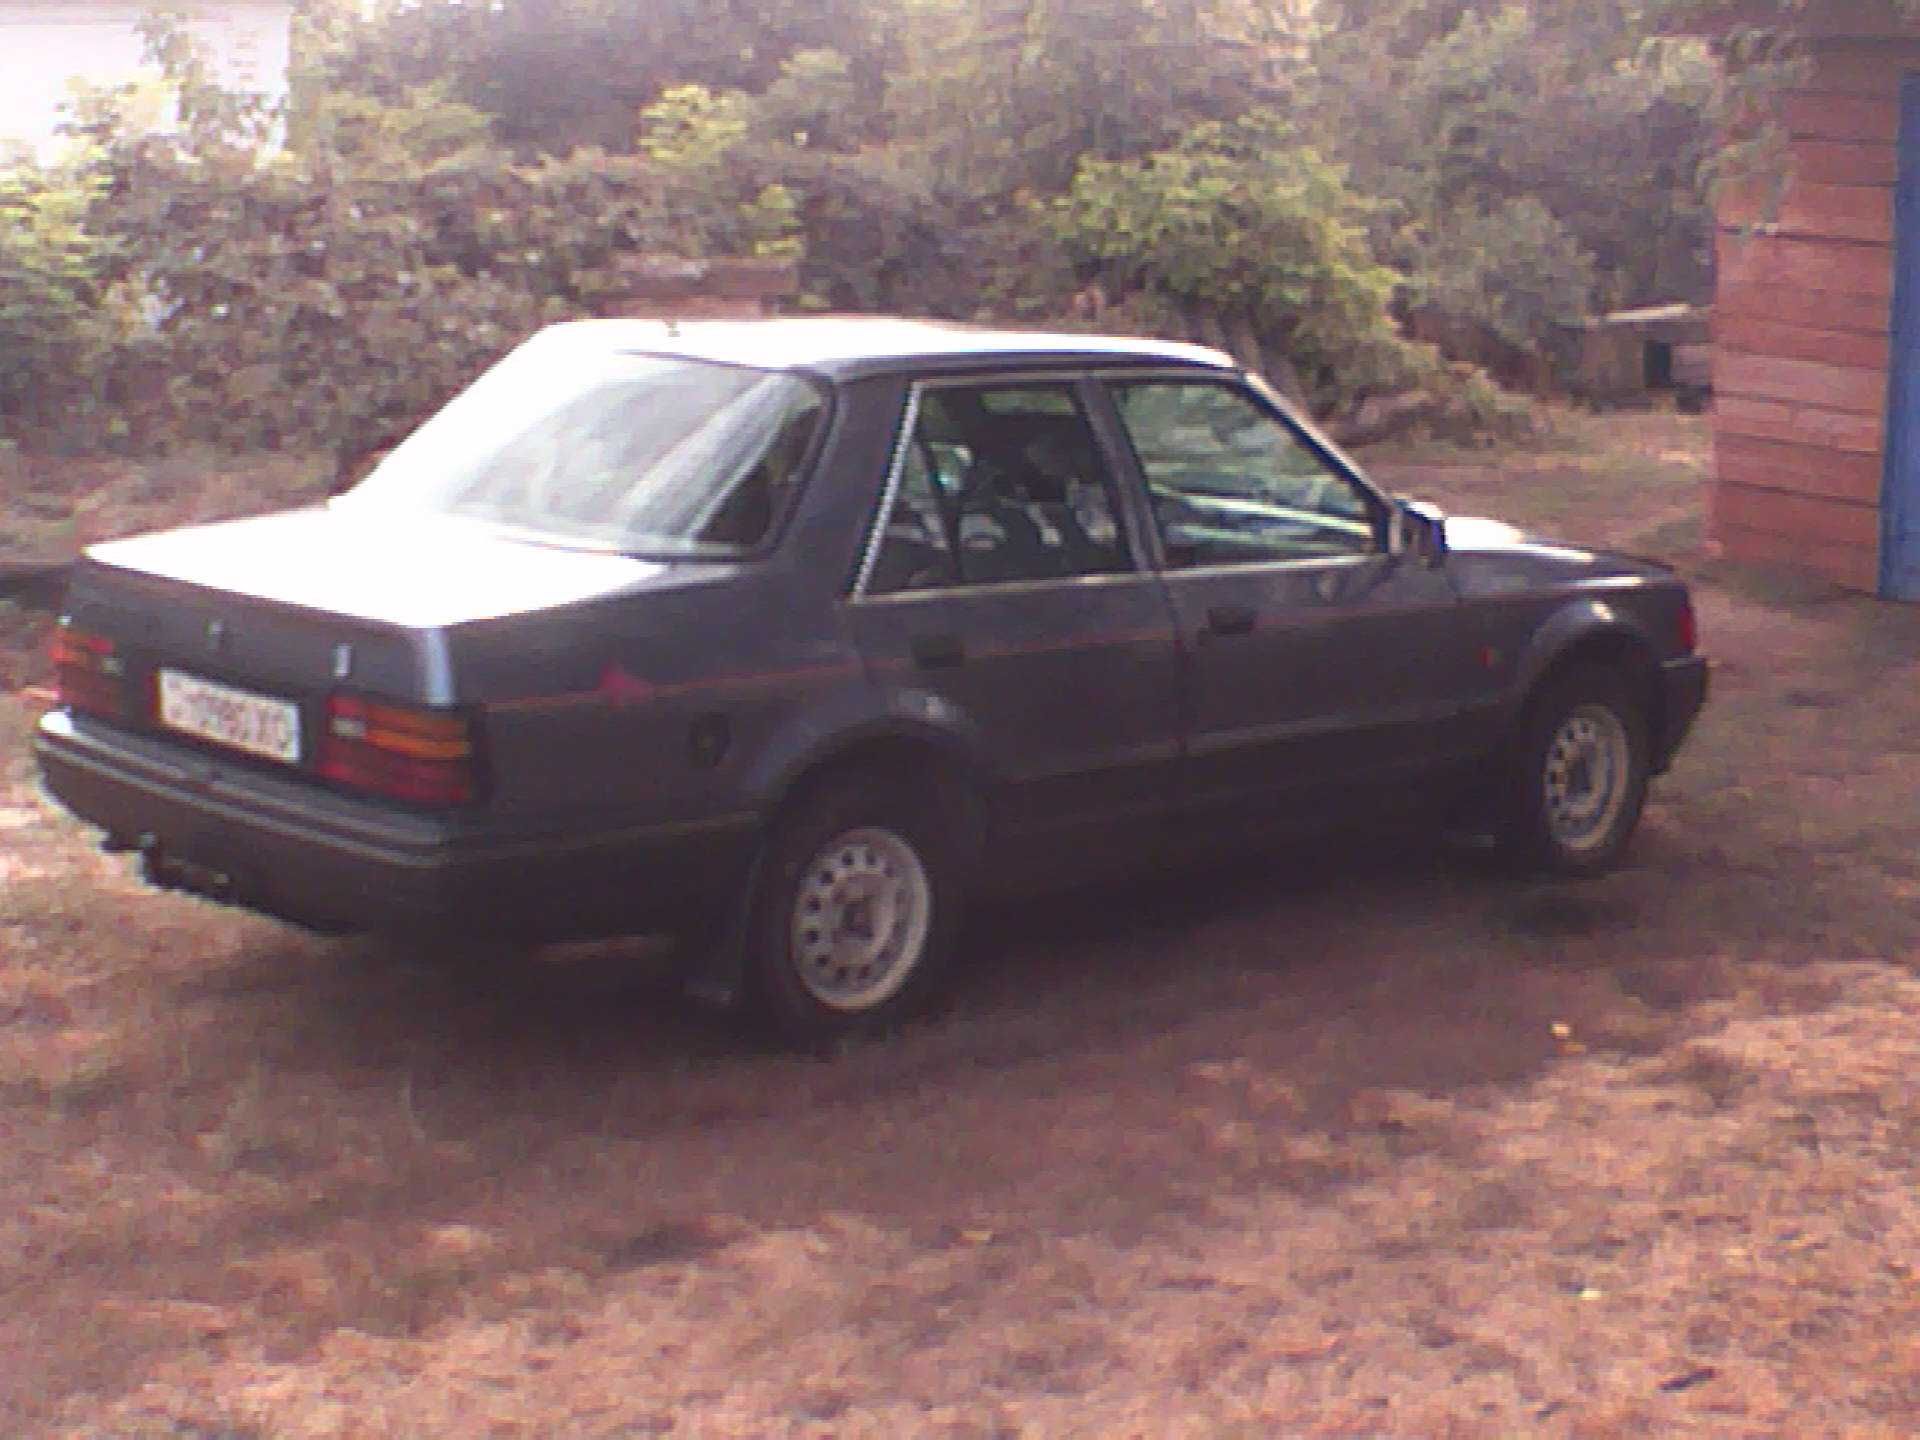 Продам Форд Орион 1,6д,1984 год,в робочему стани.